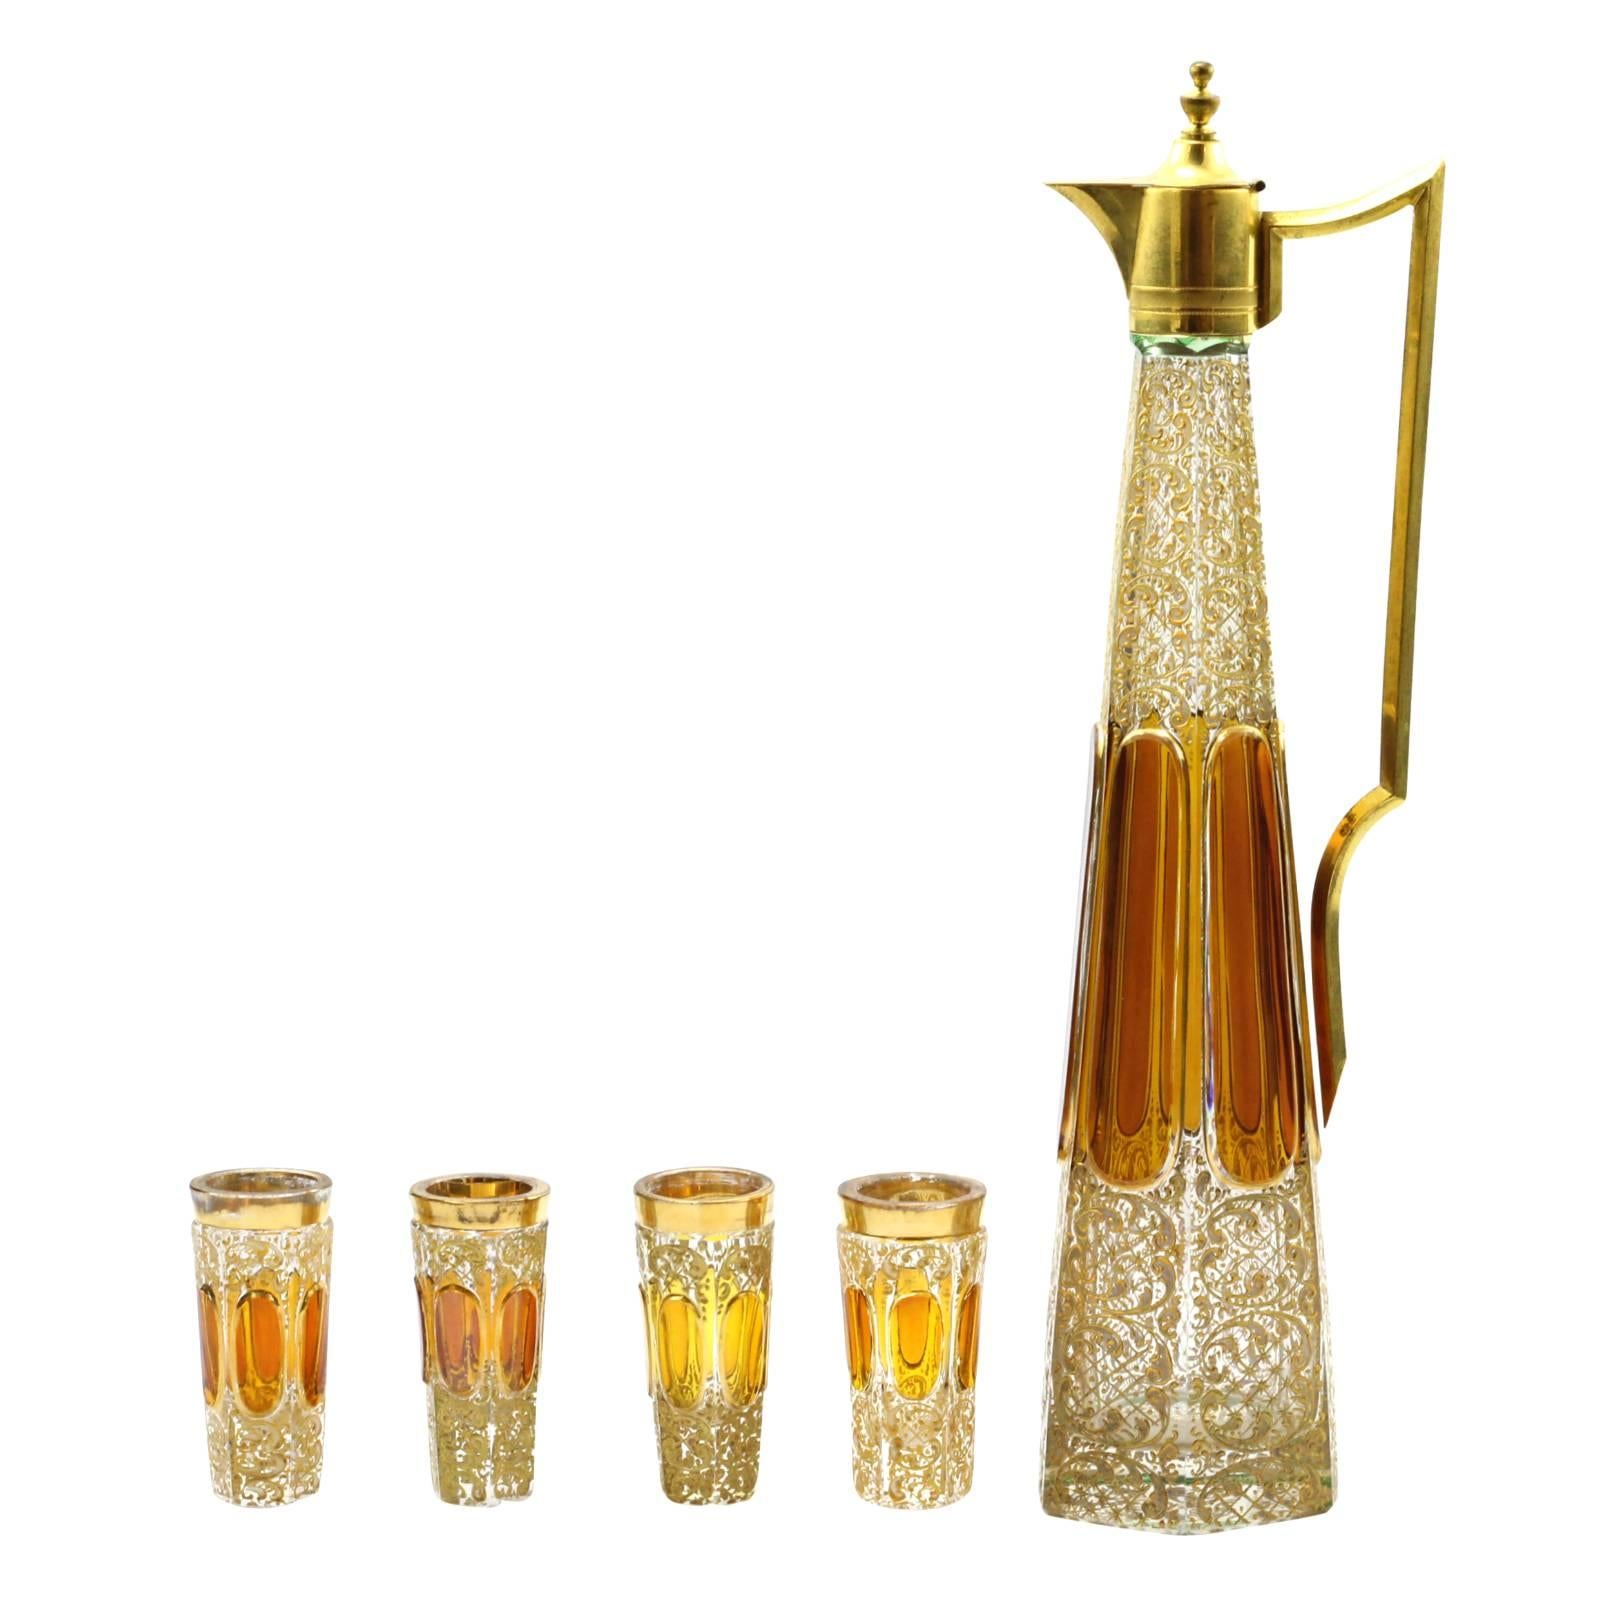 Art Nouveau Five-Piece Enamel Glass Liquor Decanter Set by Moser